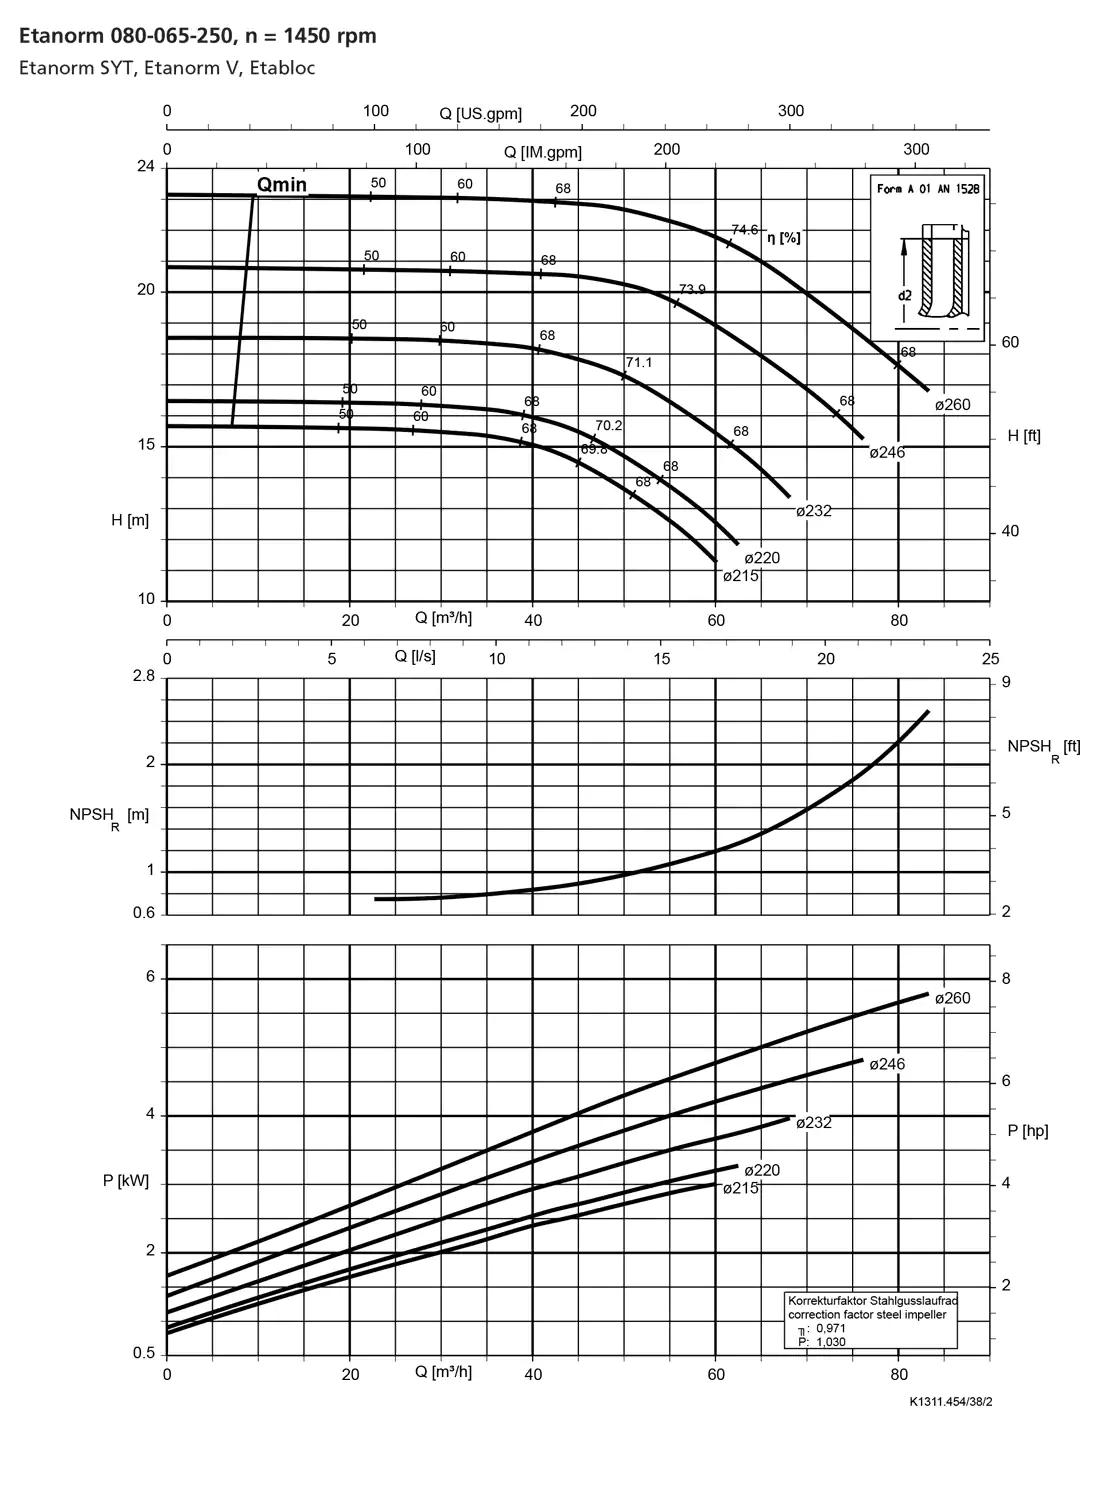 نمودار-کارکرد-پمپ-etanorm-syt-80-065-250-1450